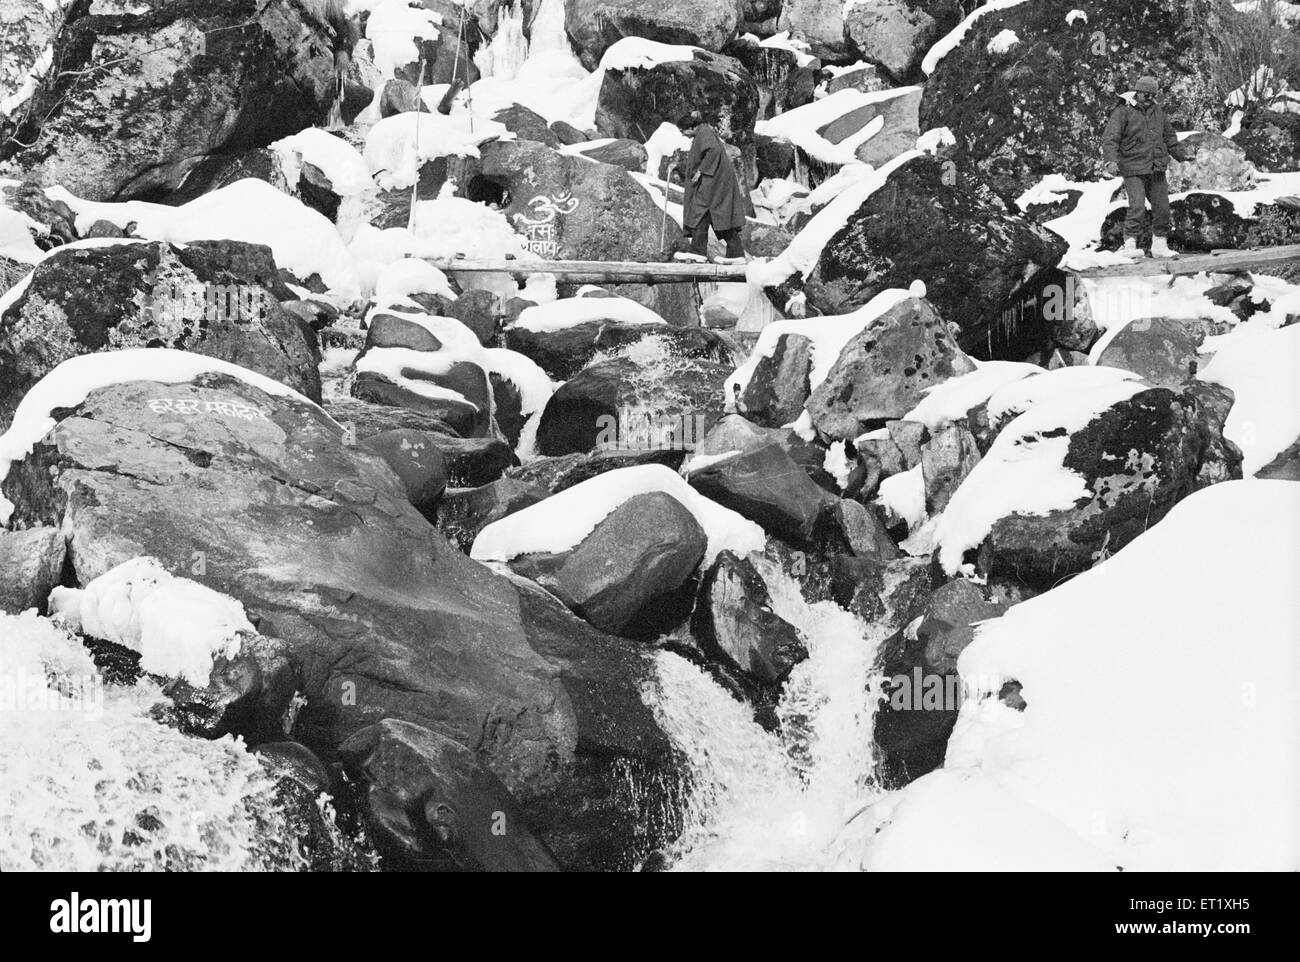 Winterszenen schneebedeckte Felsen; Arunachal Pradesh; Indien; Asien; alter Jahrgang 1900s Bild Stockfoto